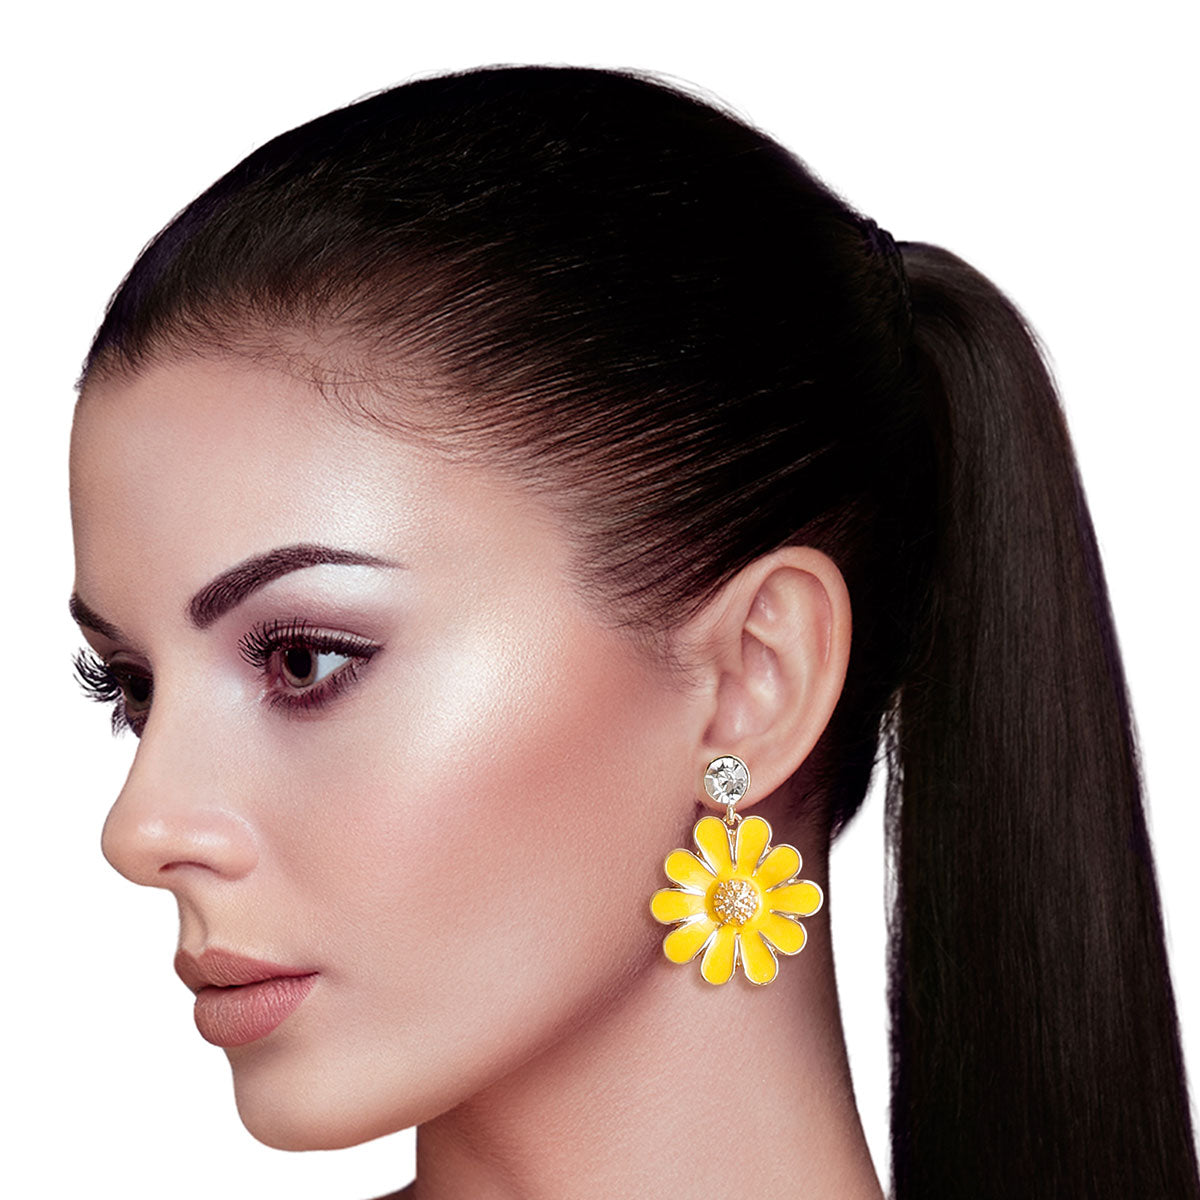 Yellow Metal Daisy Earrings